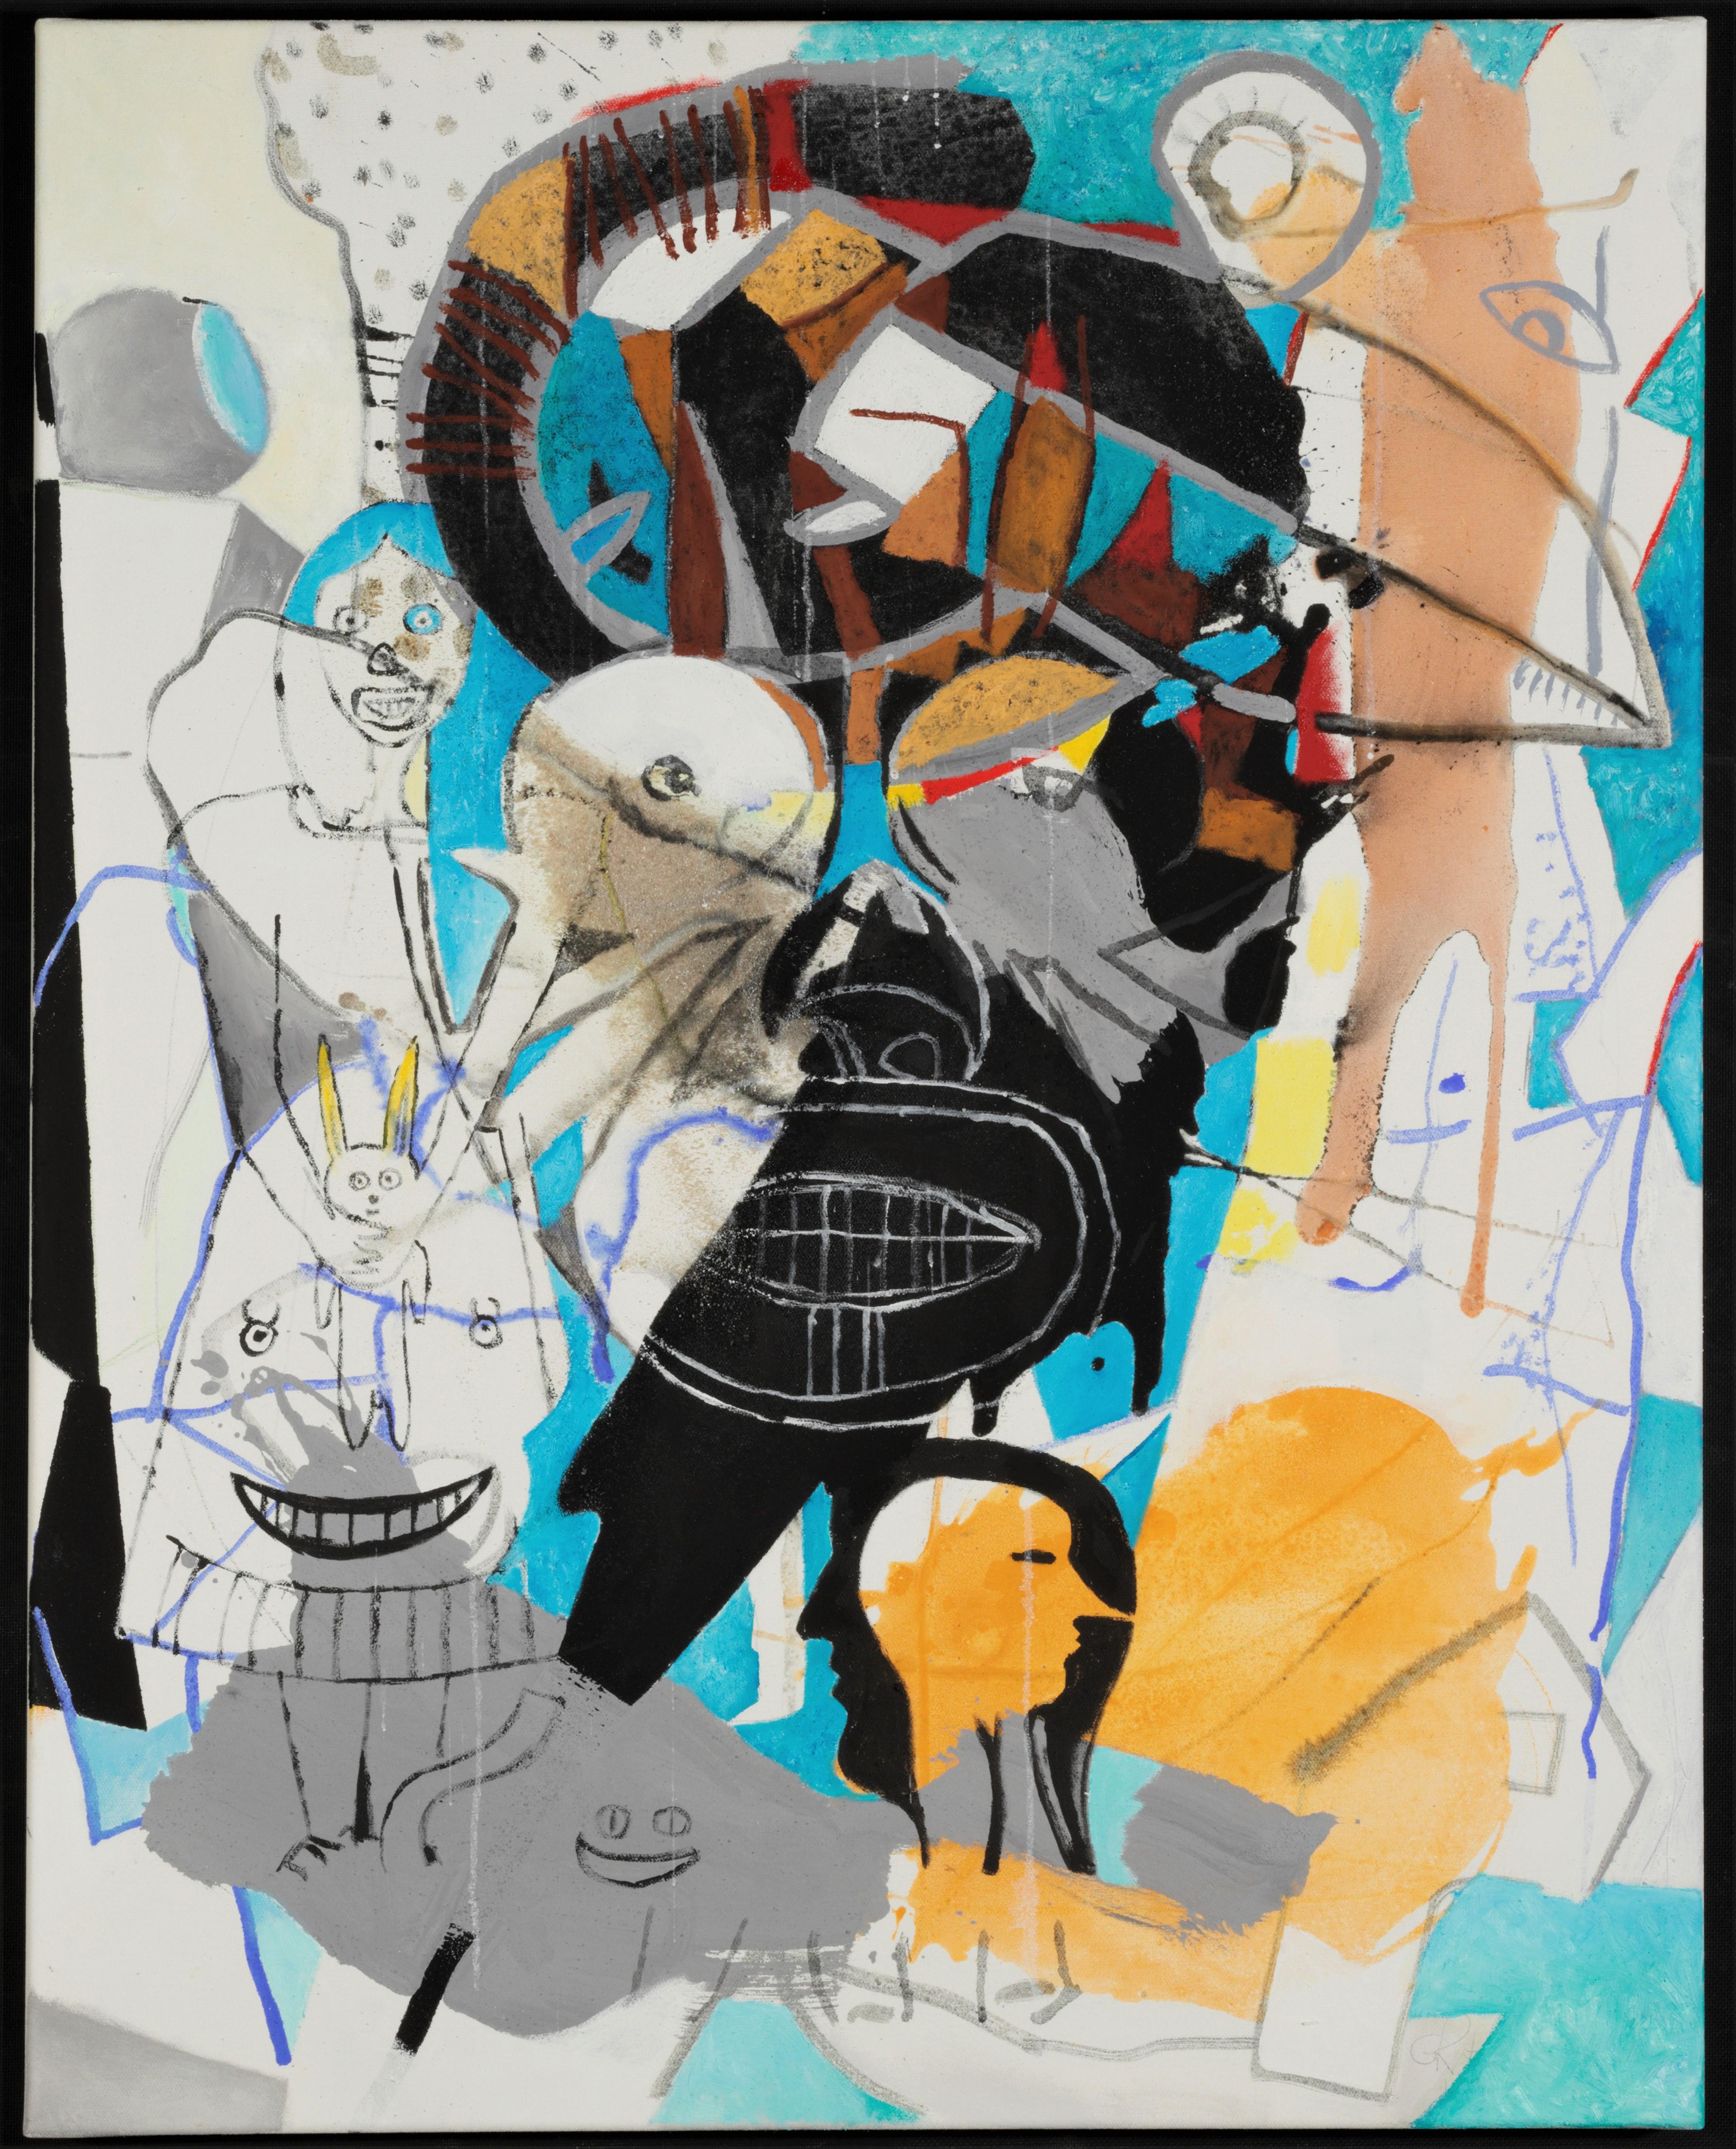 Gregor Hiltner Abstract Painting - Schneewittchen und Zwergnase, 21st century, modern, abstract, colourful